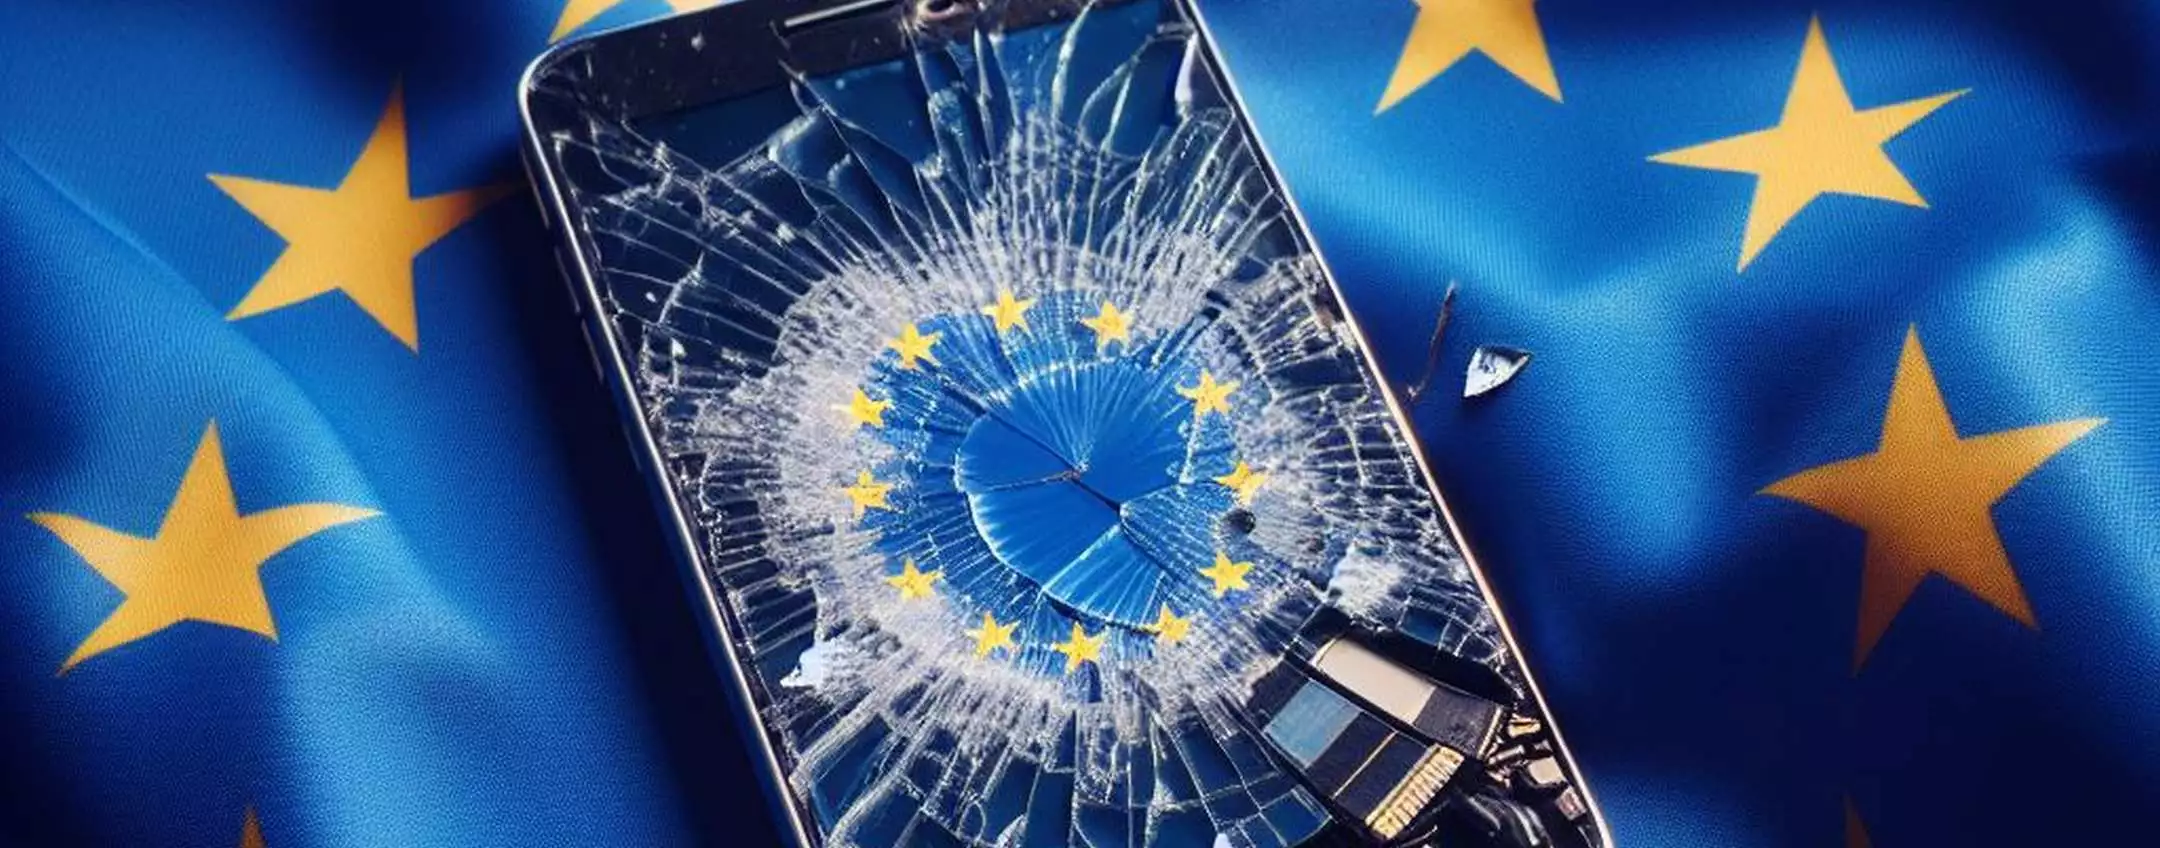 Smartpone rotto Europa